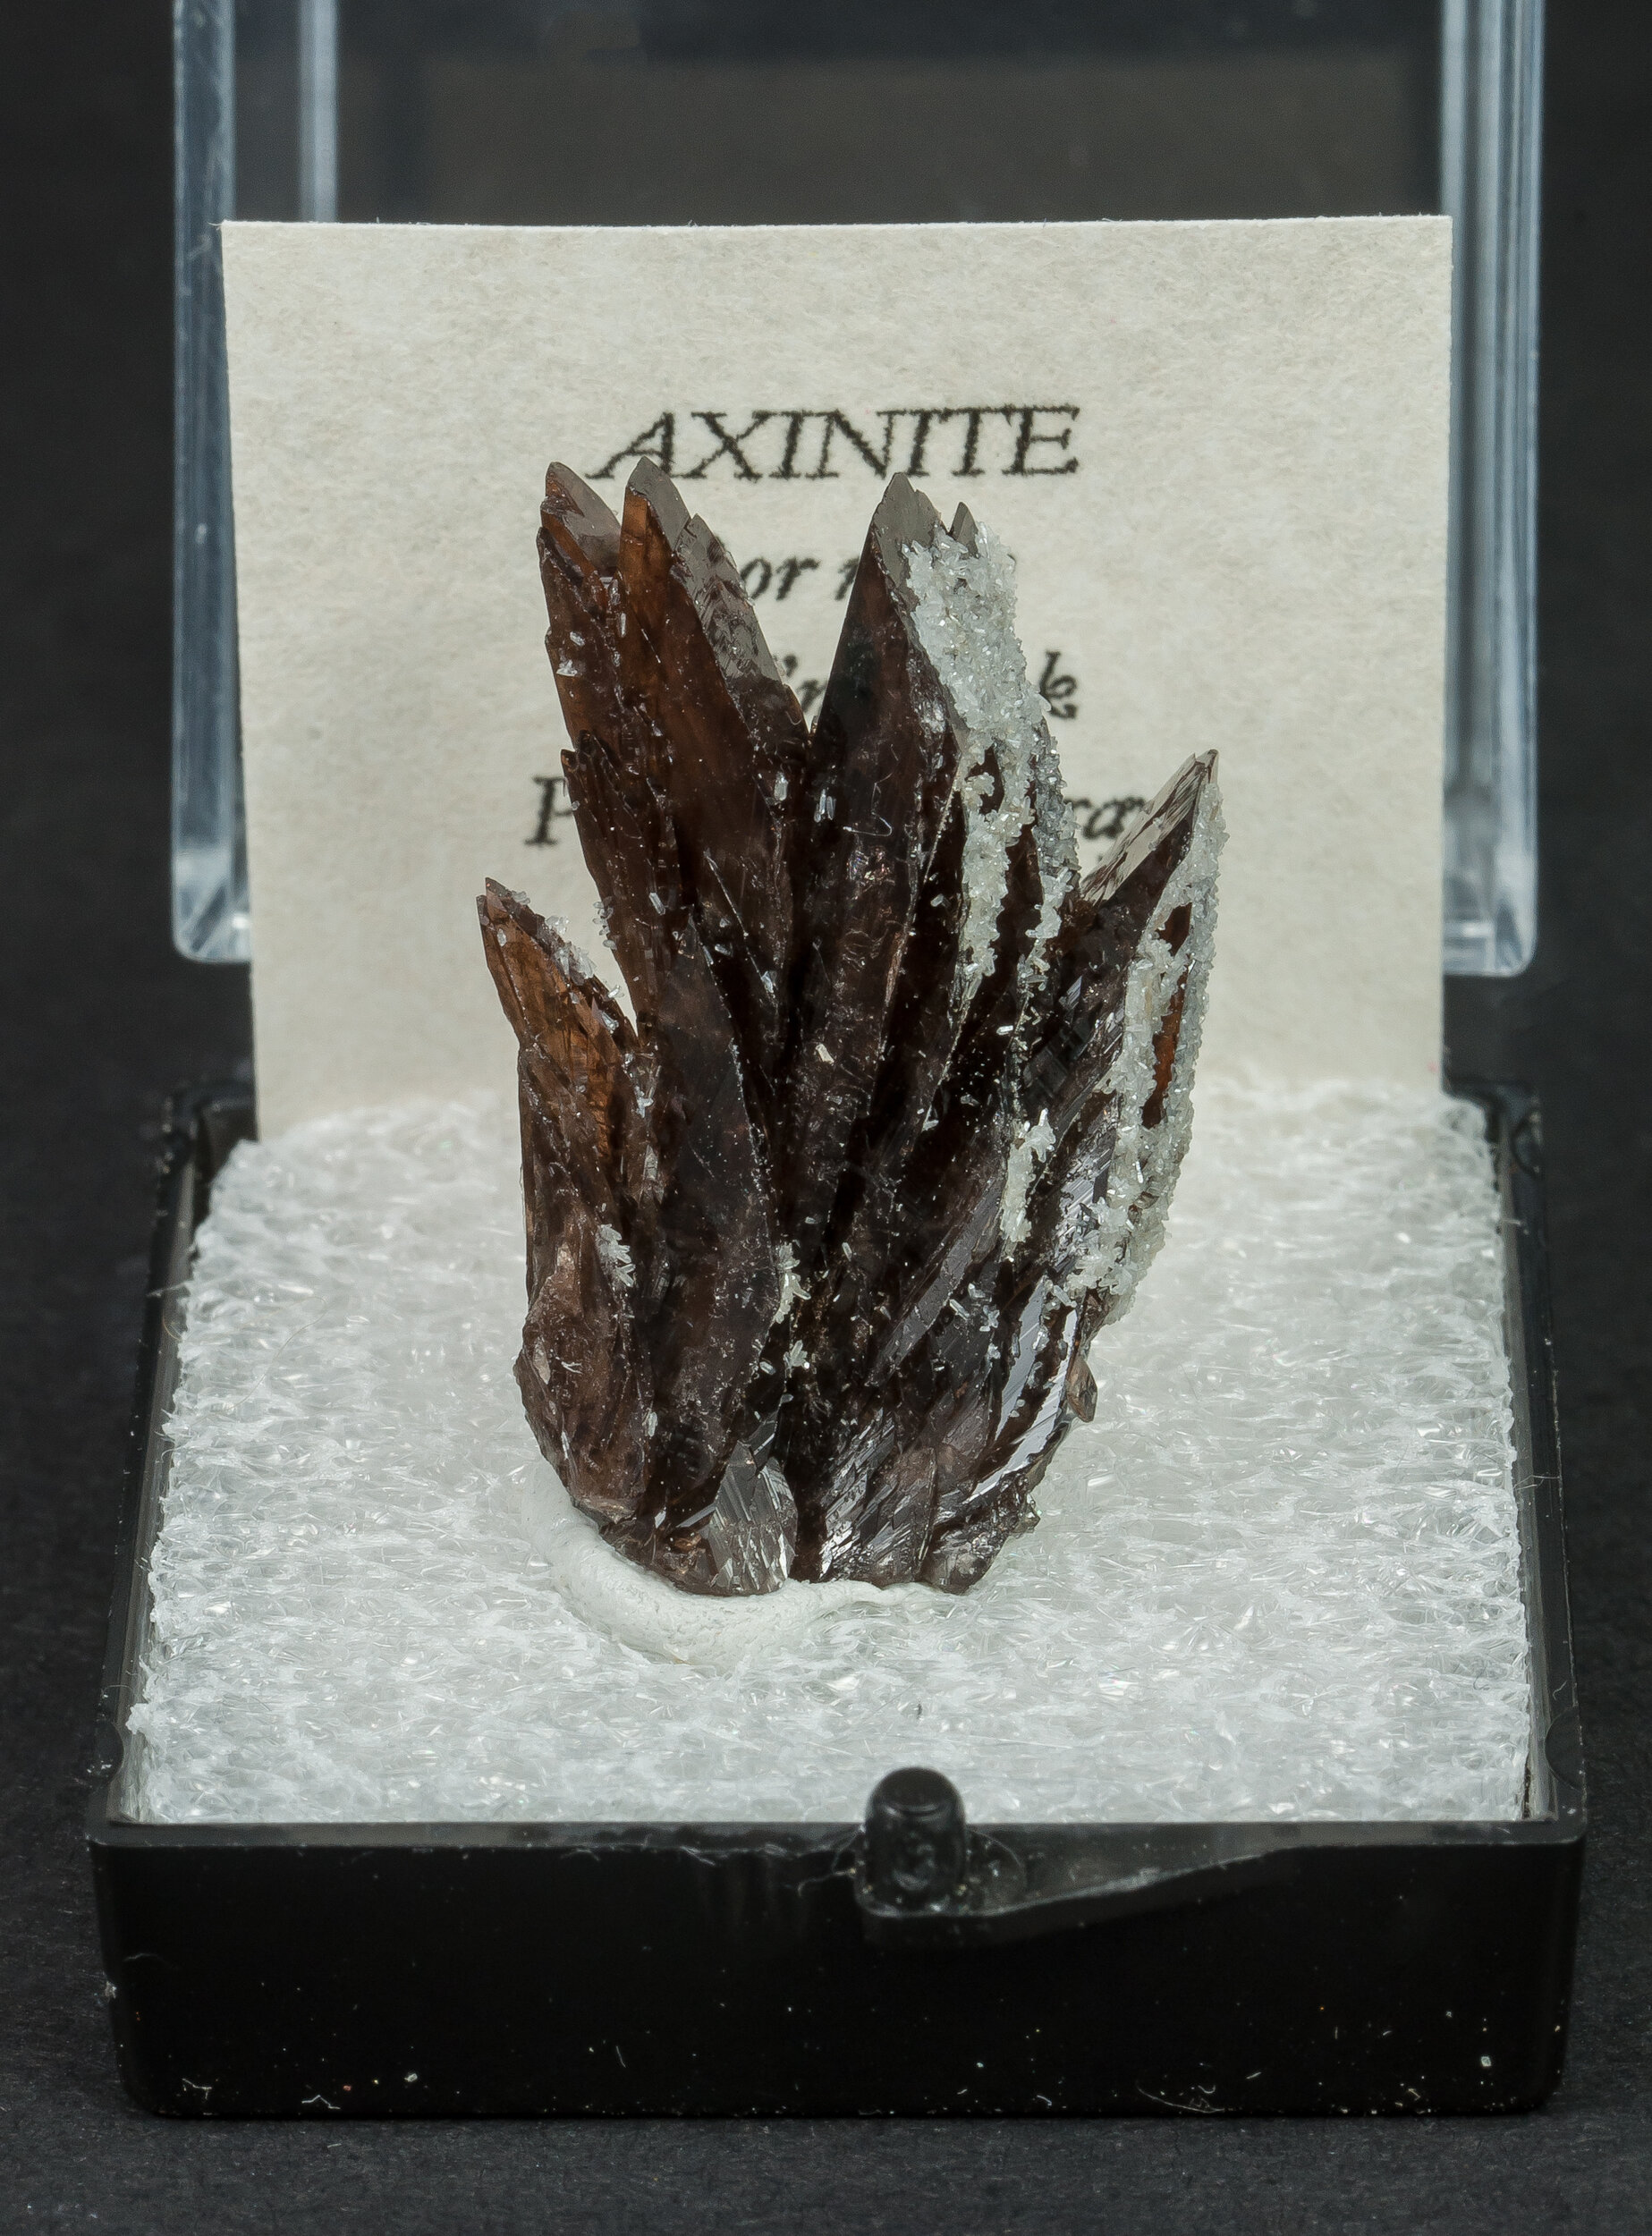 specimens/s_imagesAO0/Axinite-TFB16AO0f1.jpg